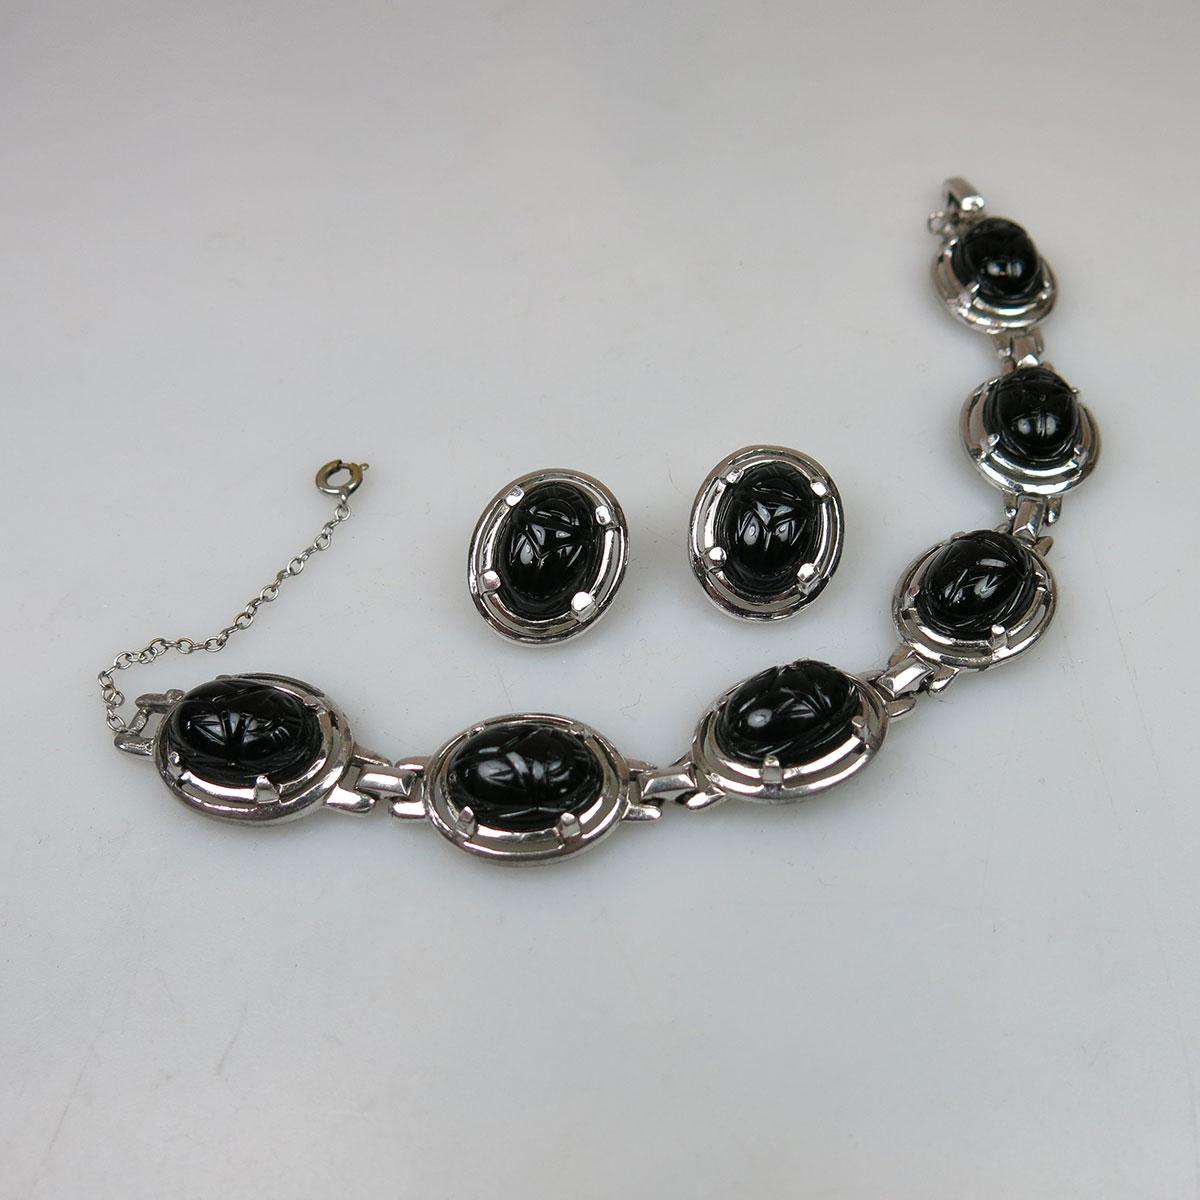 Sherman silver tone metal bracelet and earrings suite